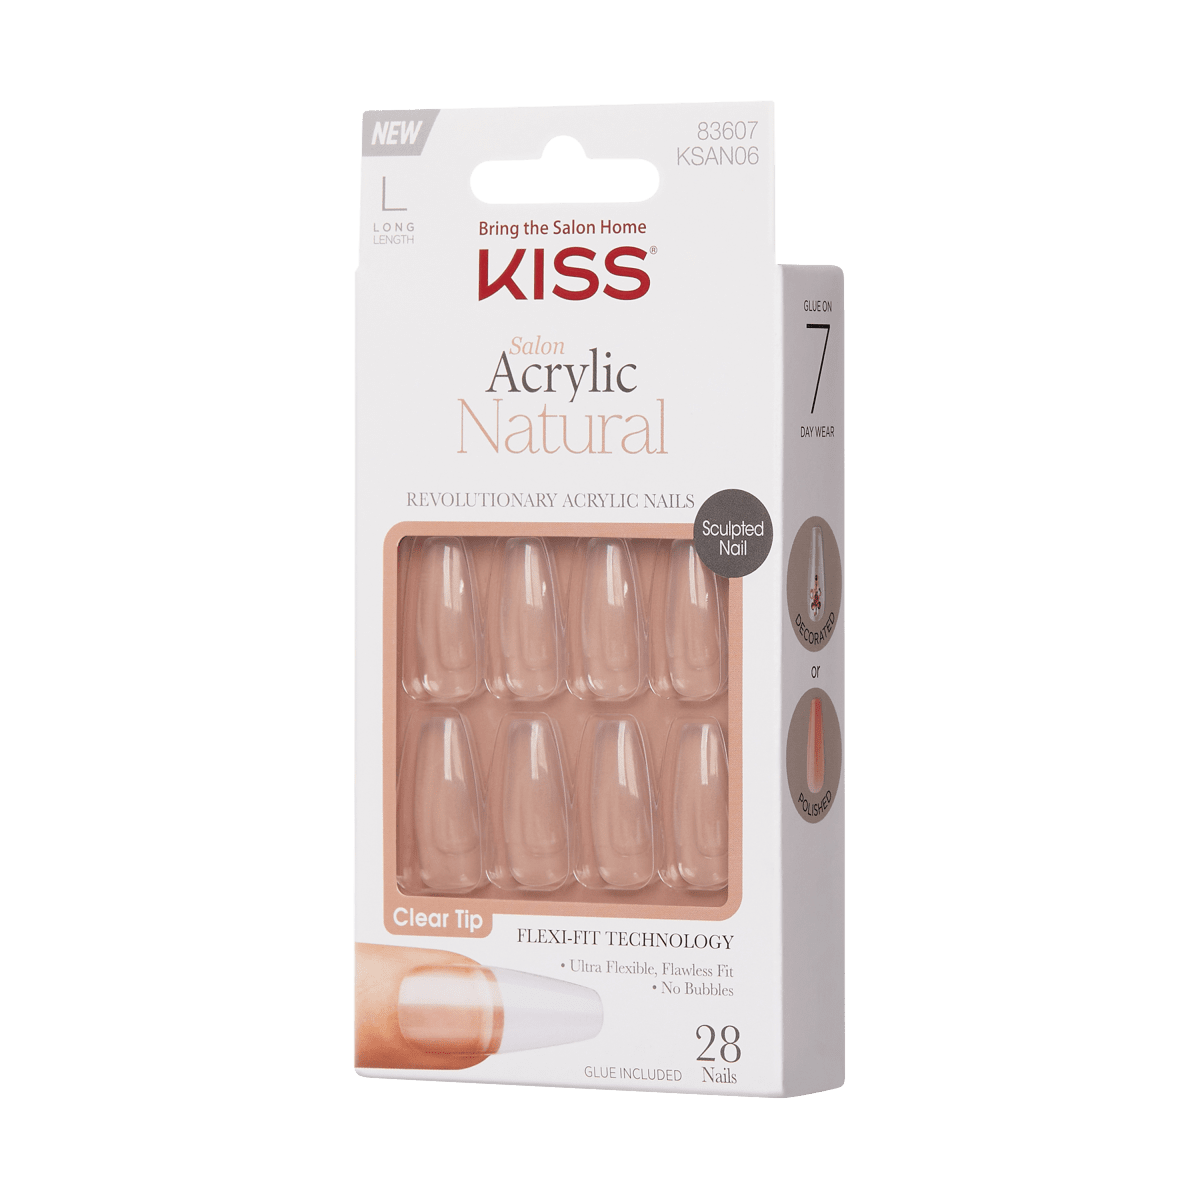 KISS Salon Acrylic Natural Nails Kit - Crystal